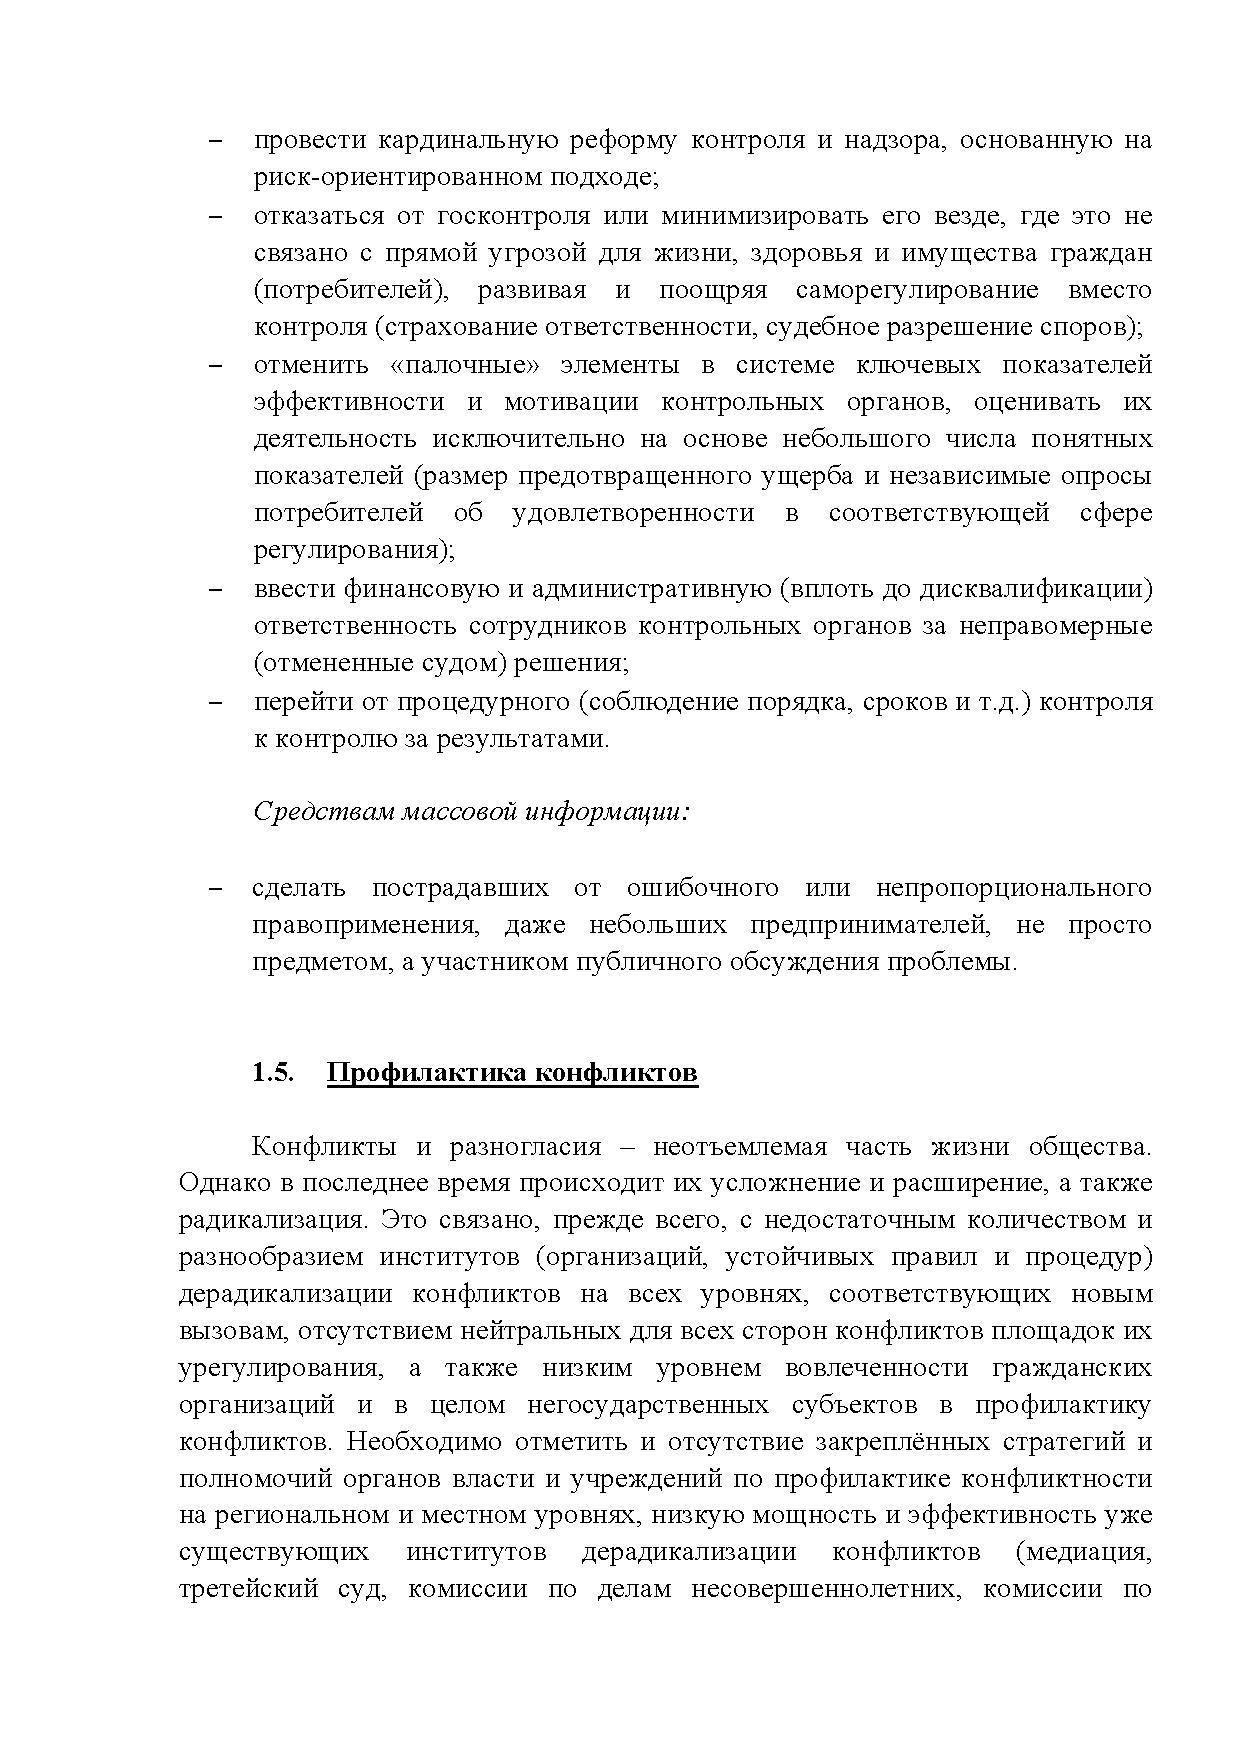  Опубликованы Предложения Общероссийского гражданского форума 2015 - фото 16